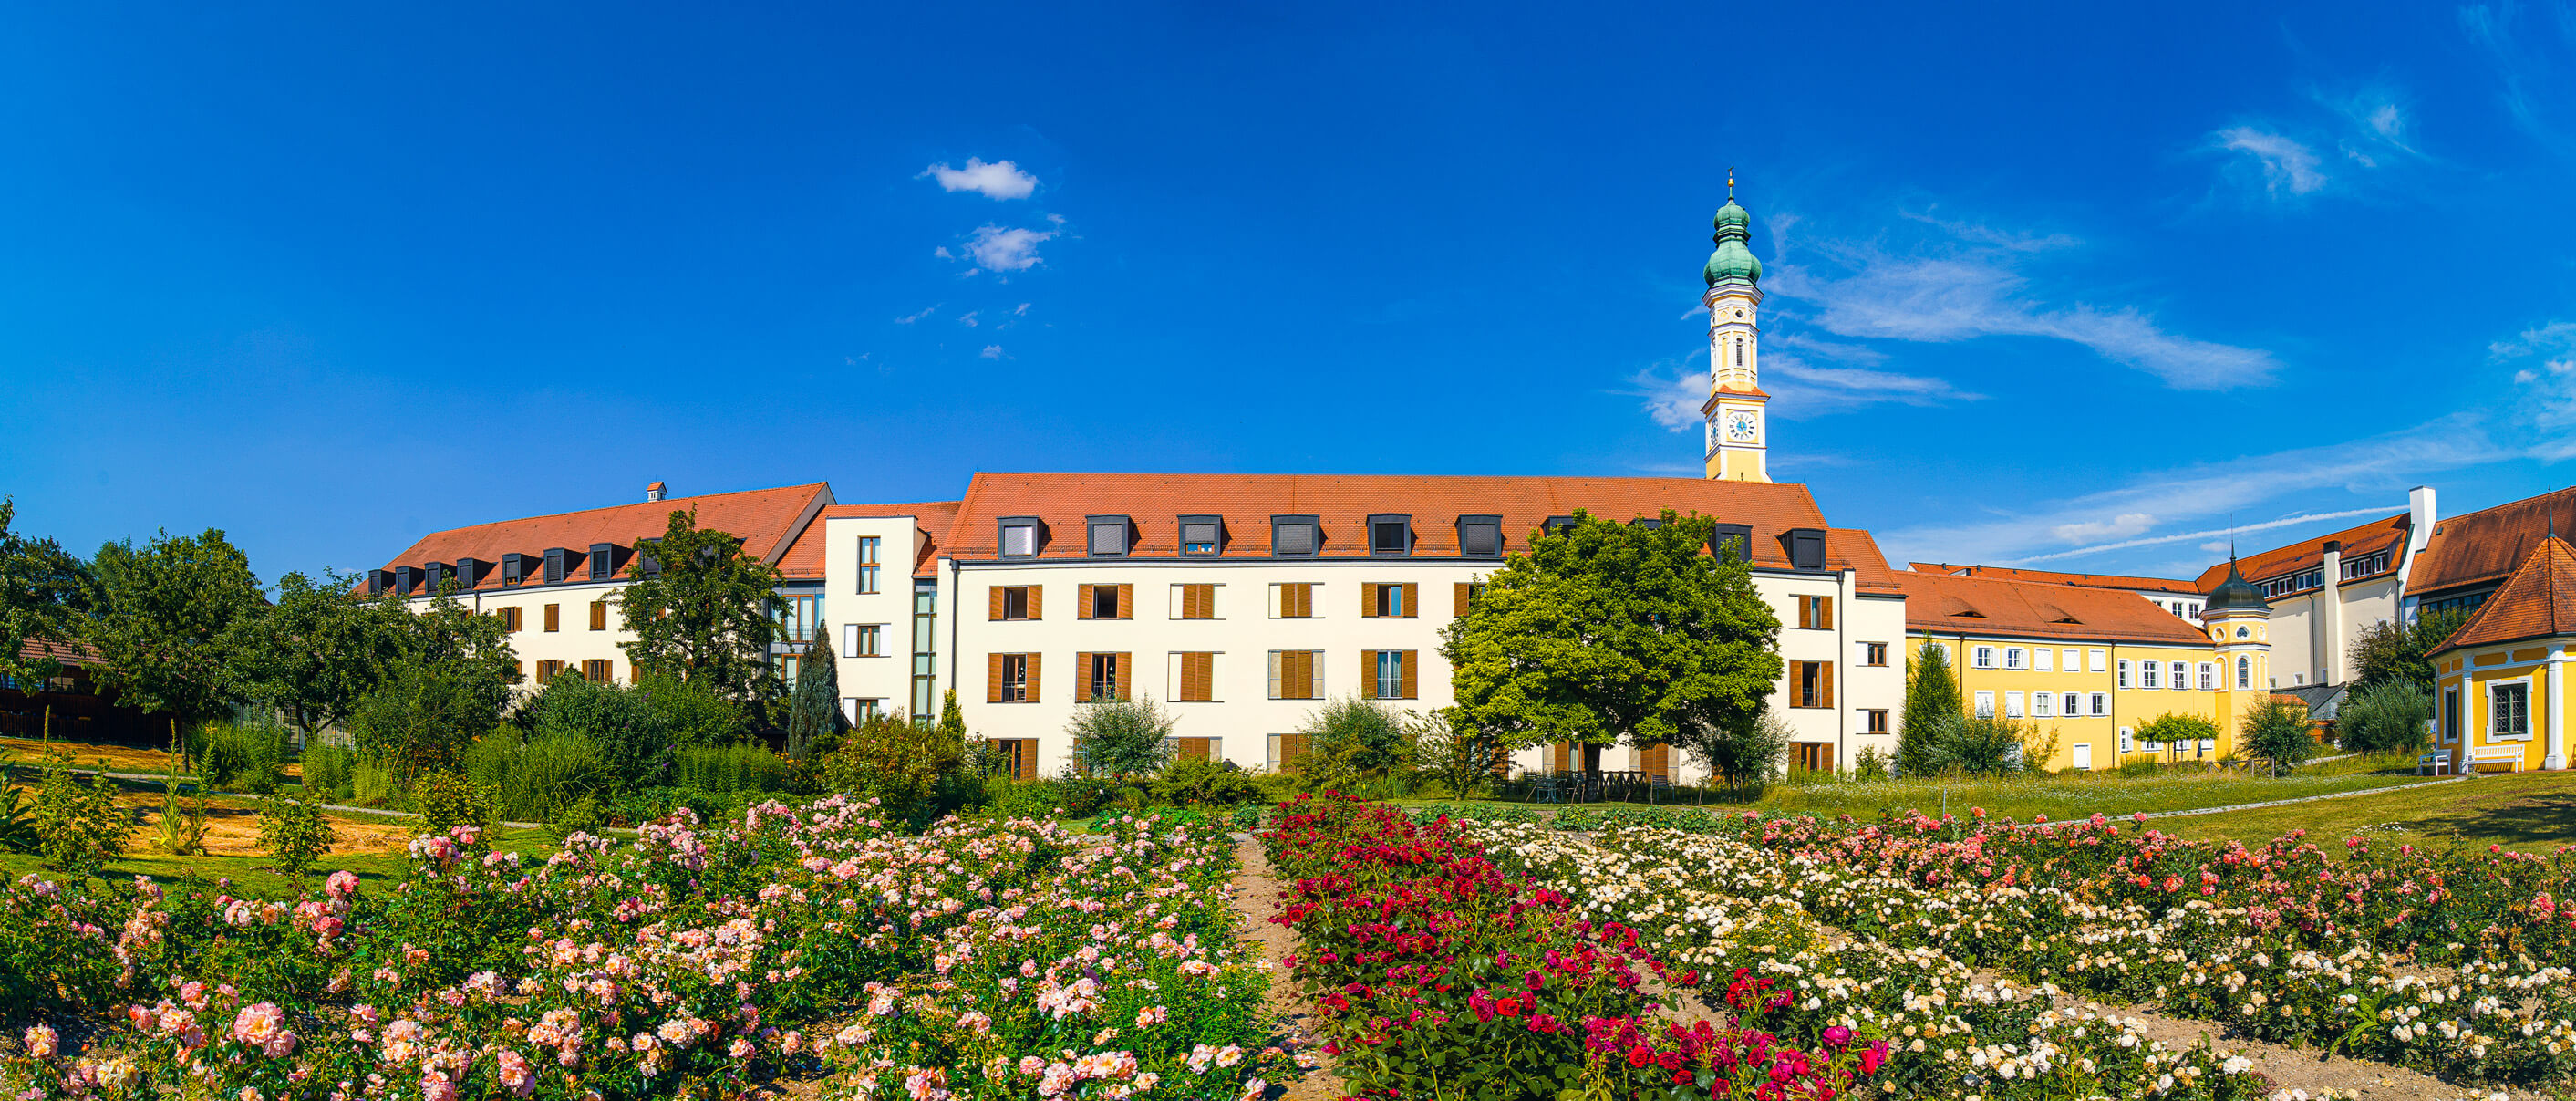 Blick vom Klostergarten auf die Abtei Seligenthal in Landshut